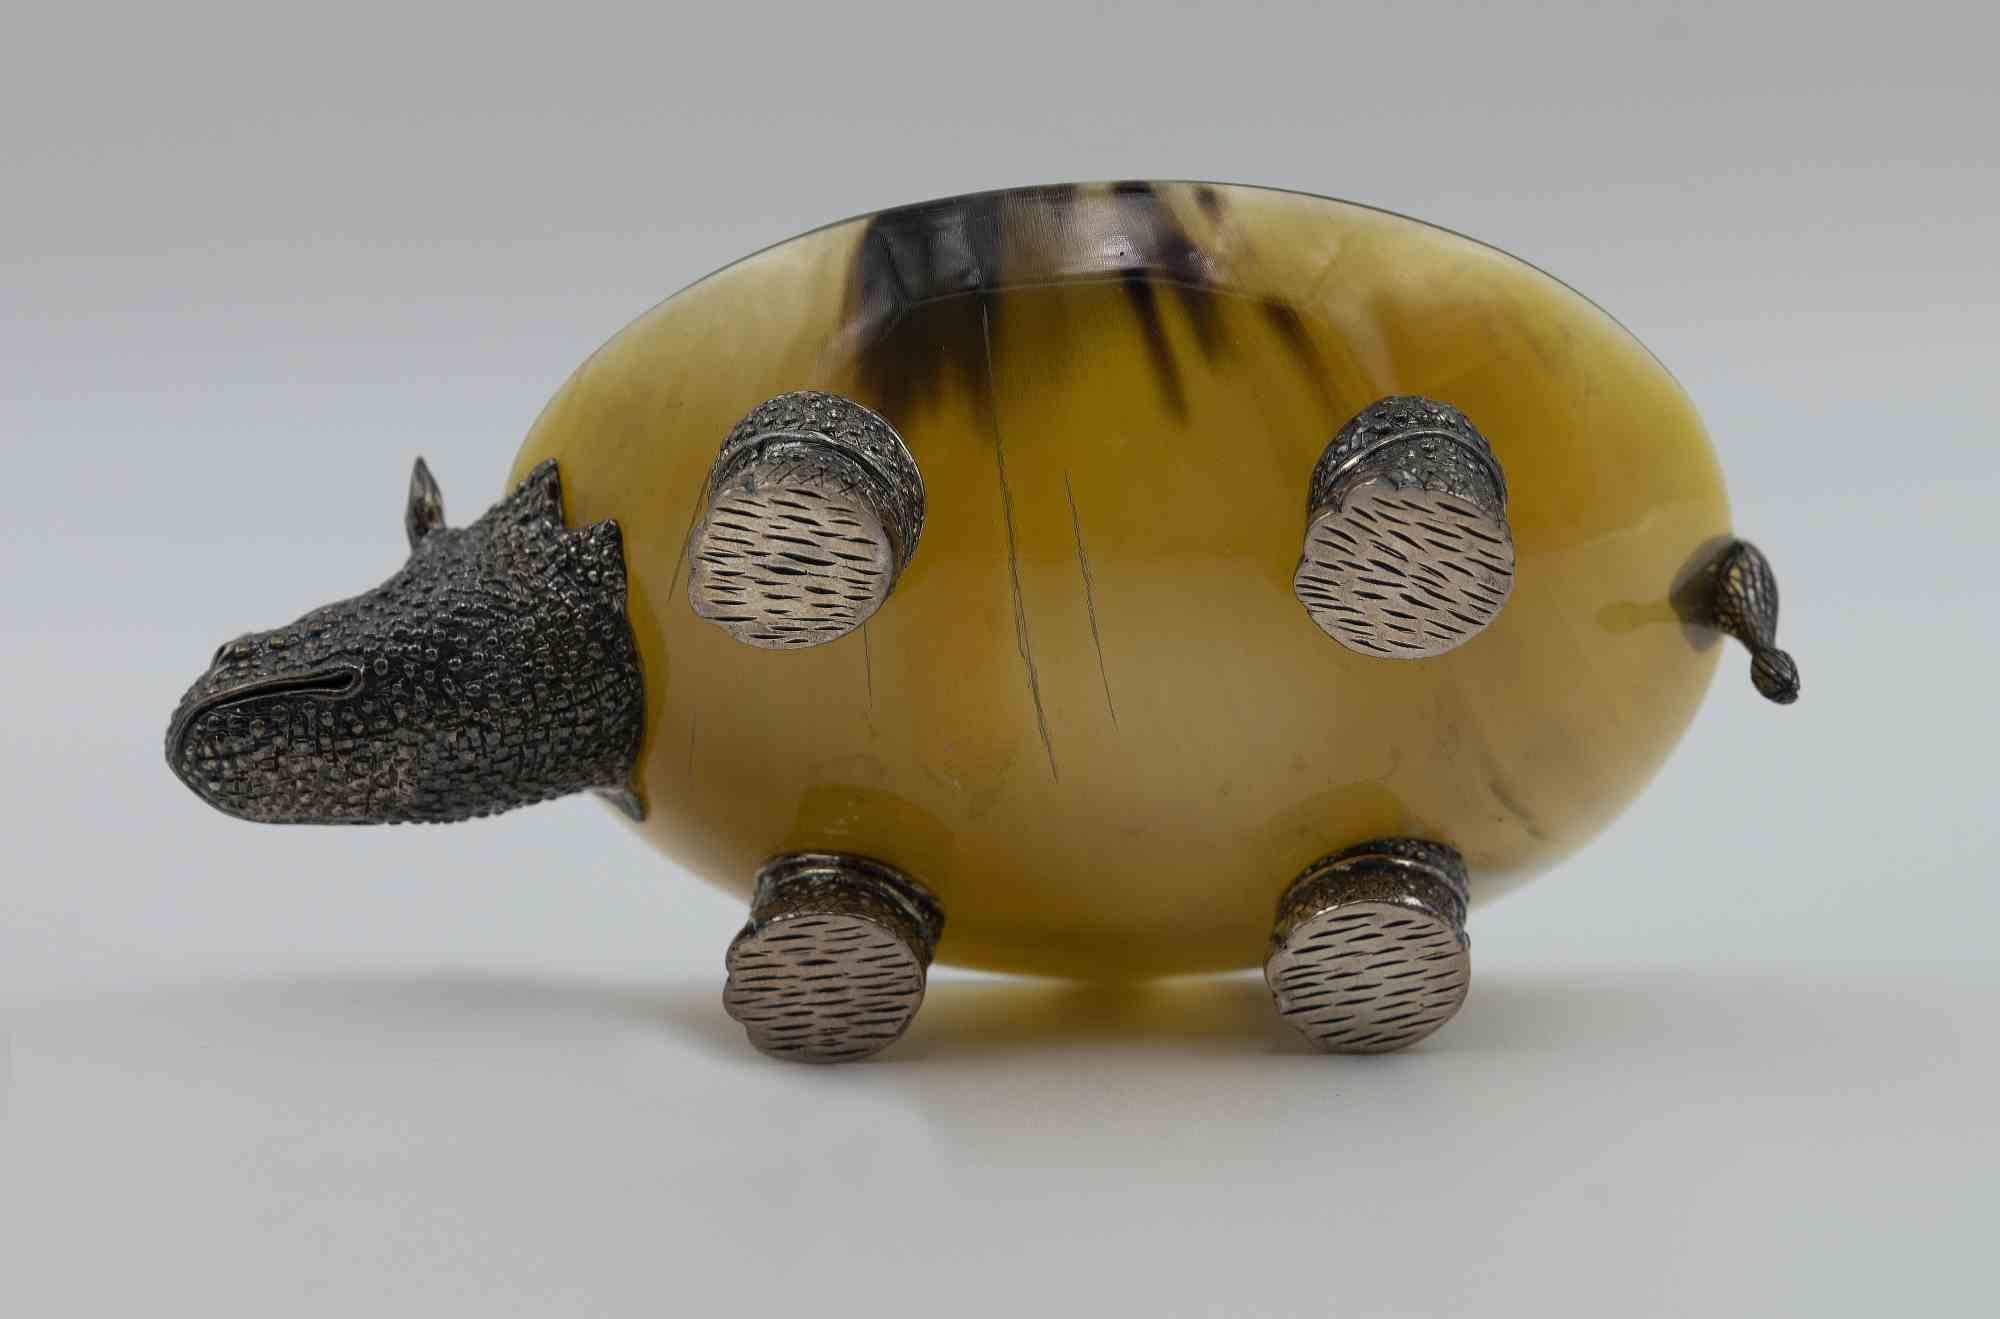 Le vide-poche Rhinocéros est un objet décoratif original réalisé dans les années 1970.

Objet décoratif en argent et en verre.